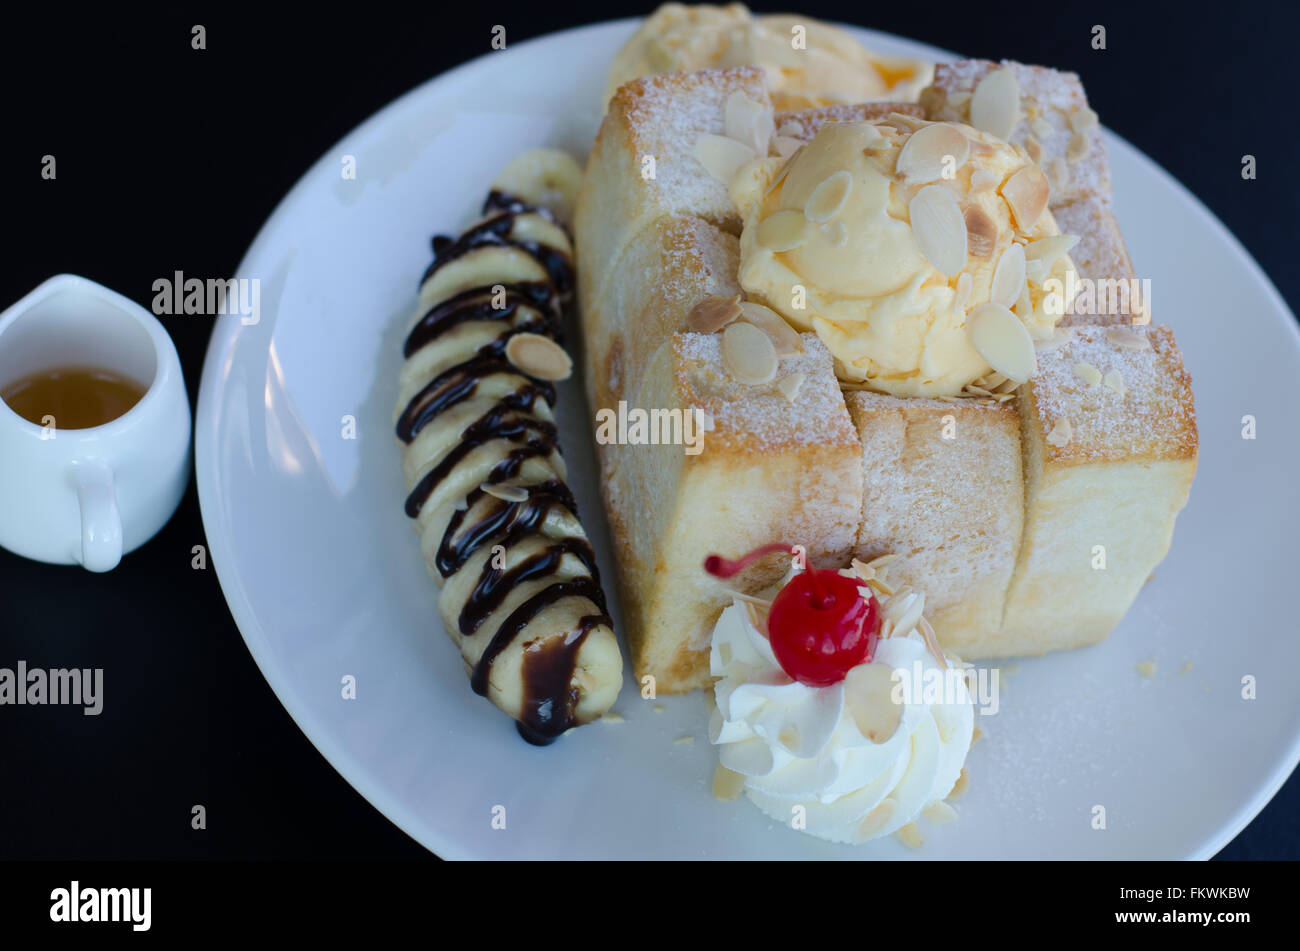 shibuya honey toast with ice cream Stock Photo